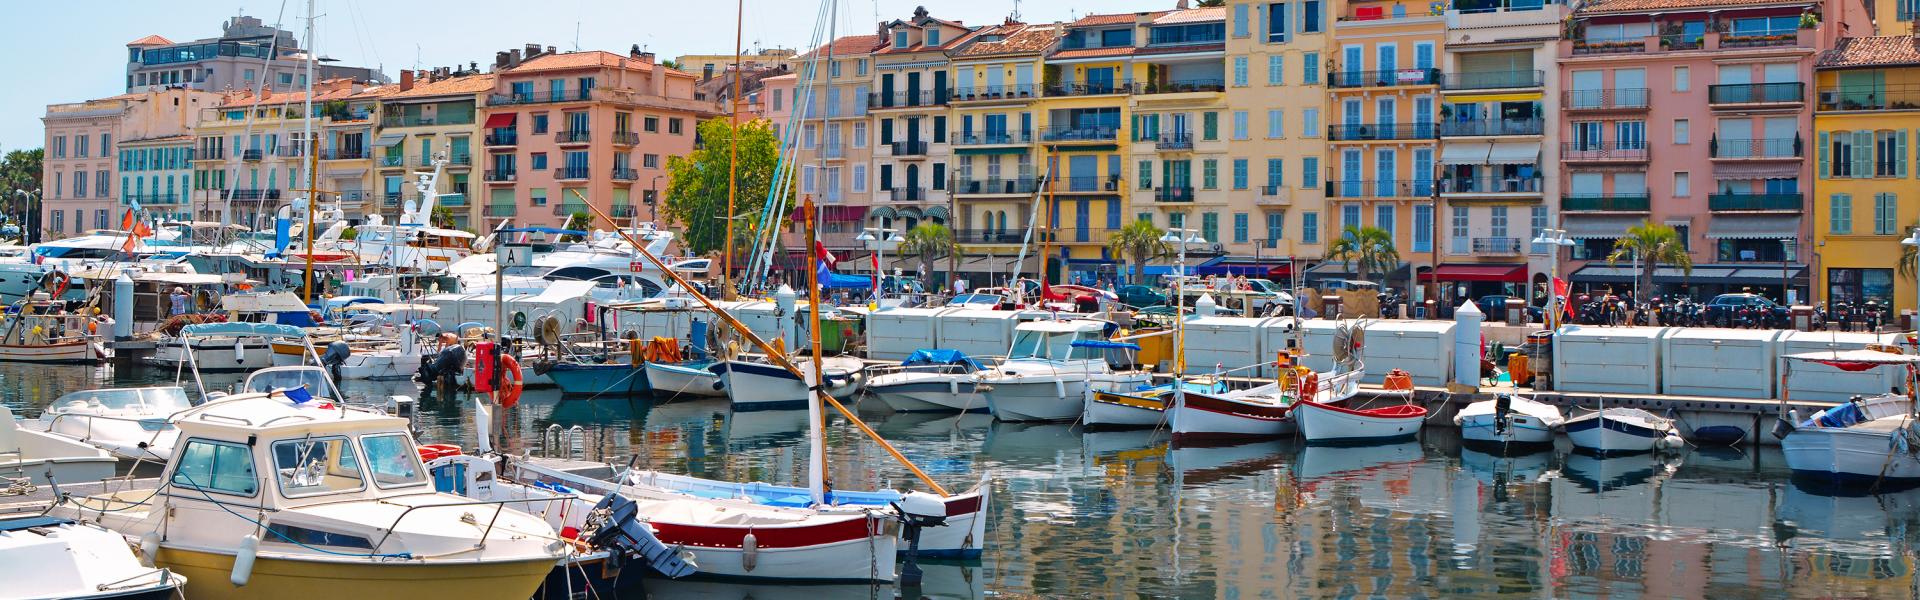 Een vakantiewoning in Cannes om de luxe van de Côte d'Azur zelf te ontdekken - Casamundo